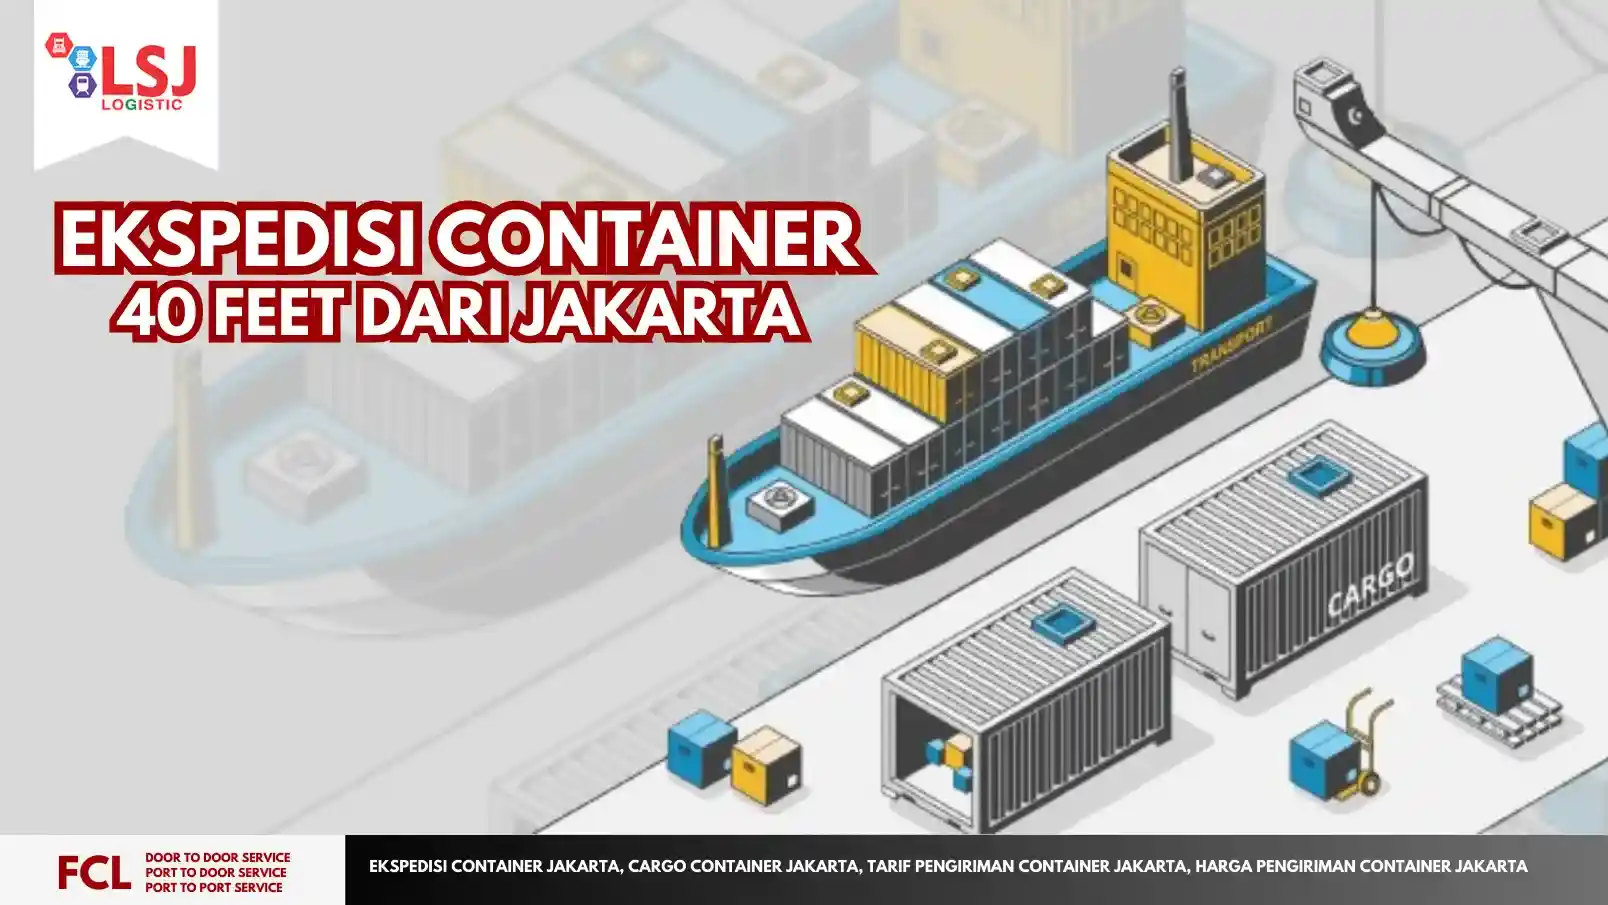 Tarif Pengiriman Container 40 Feet dari Jakarta